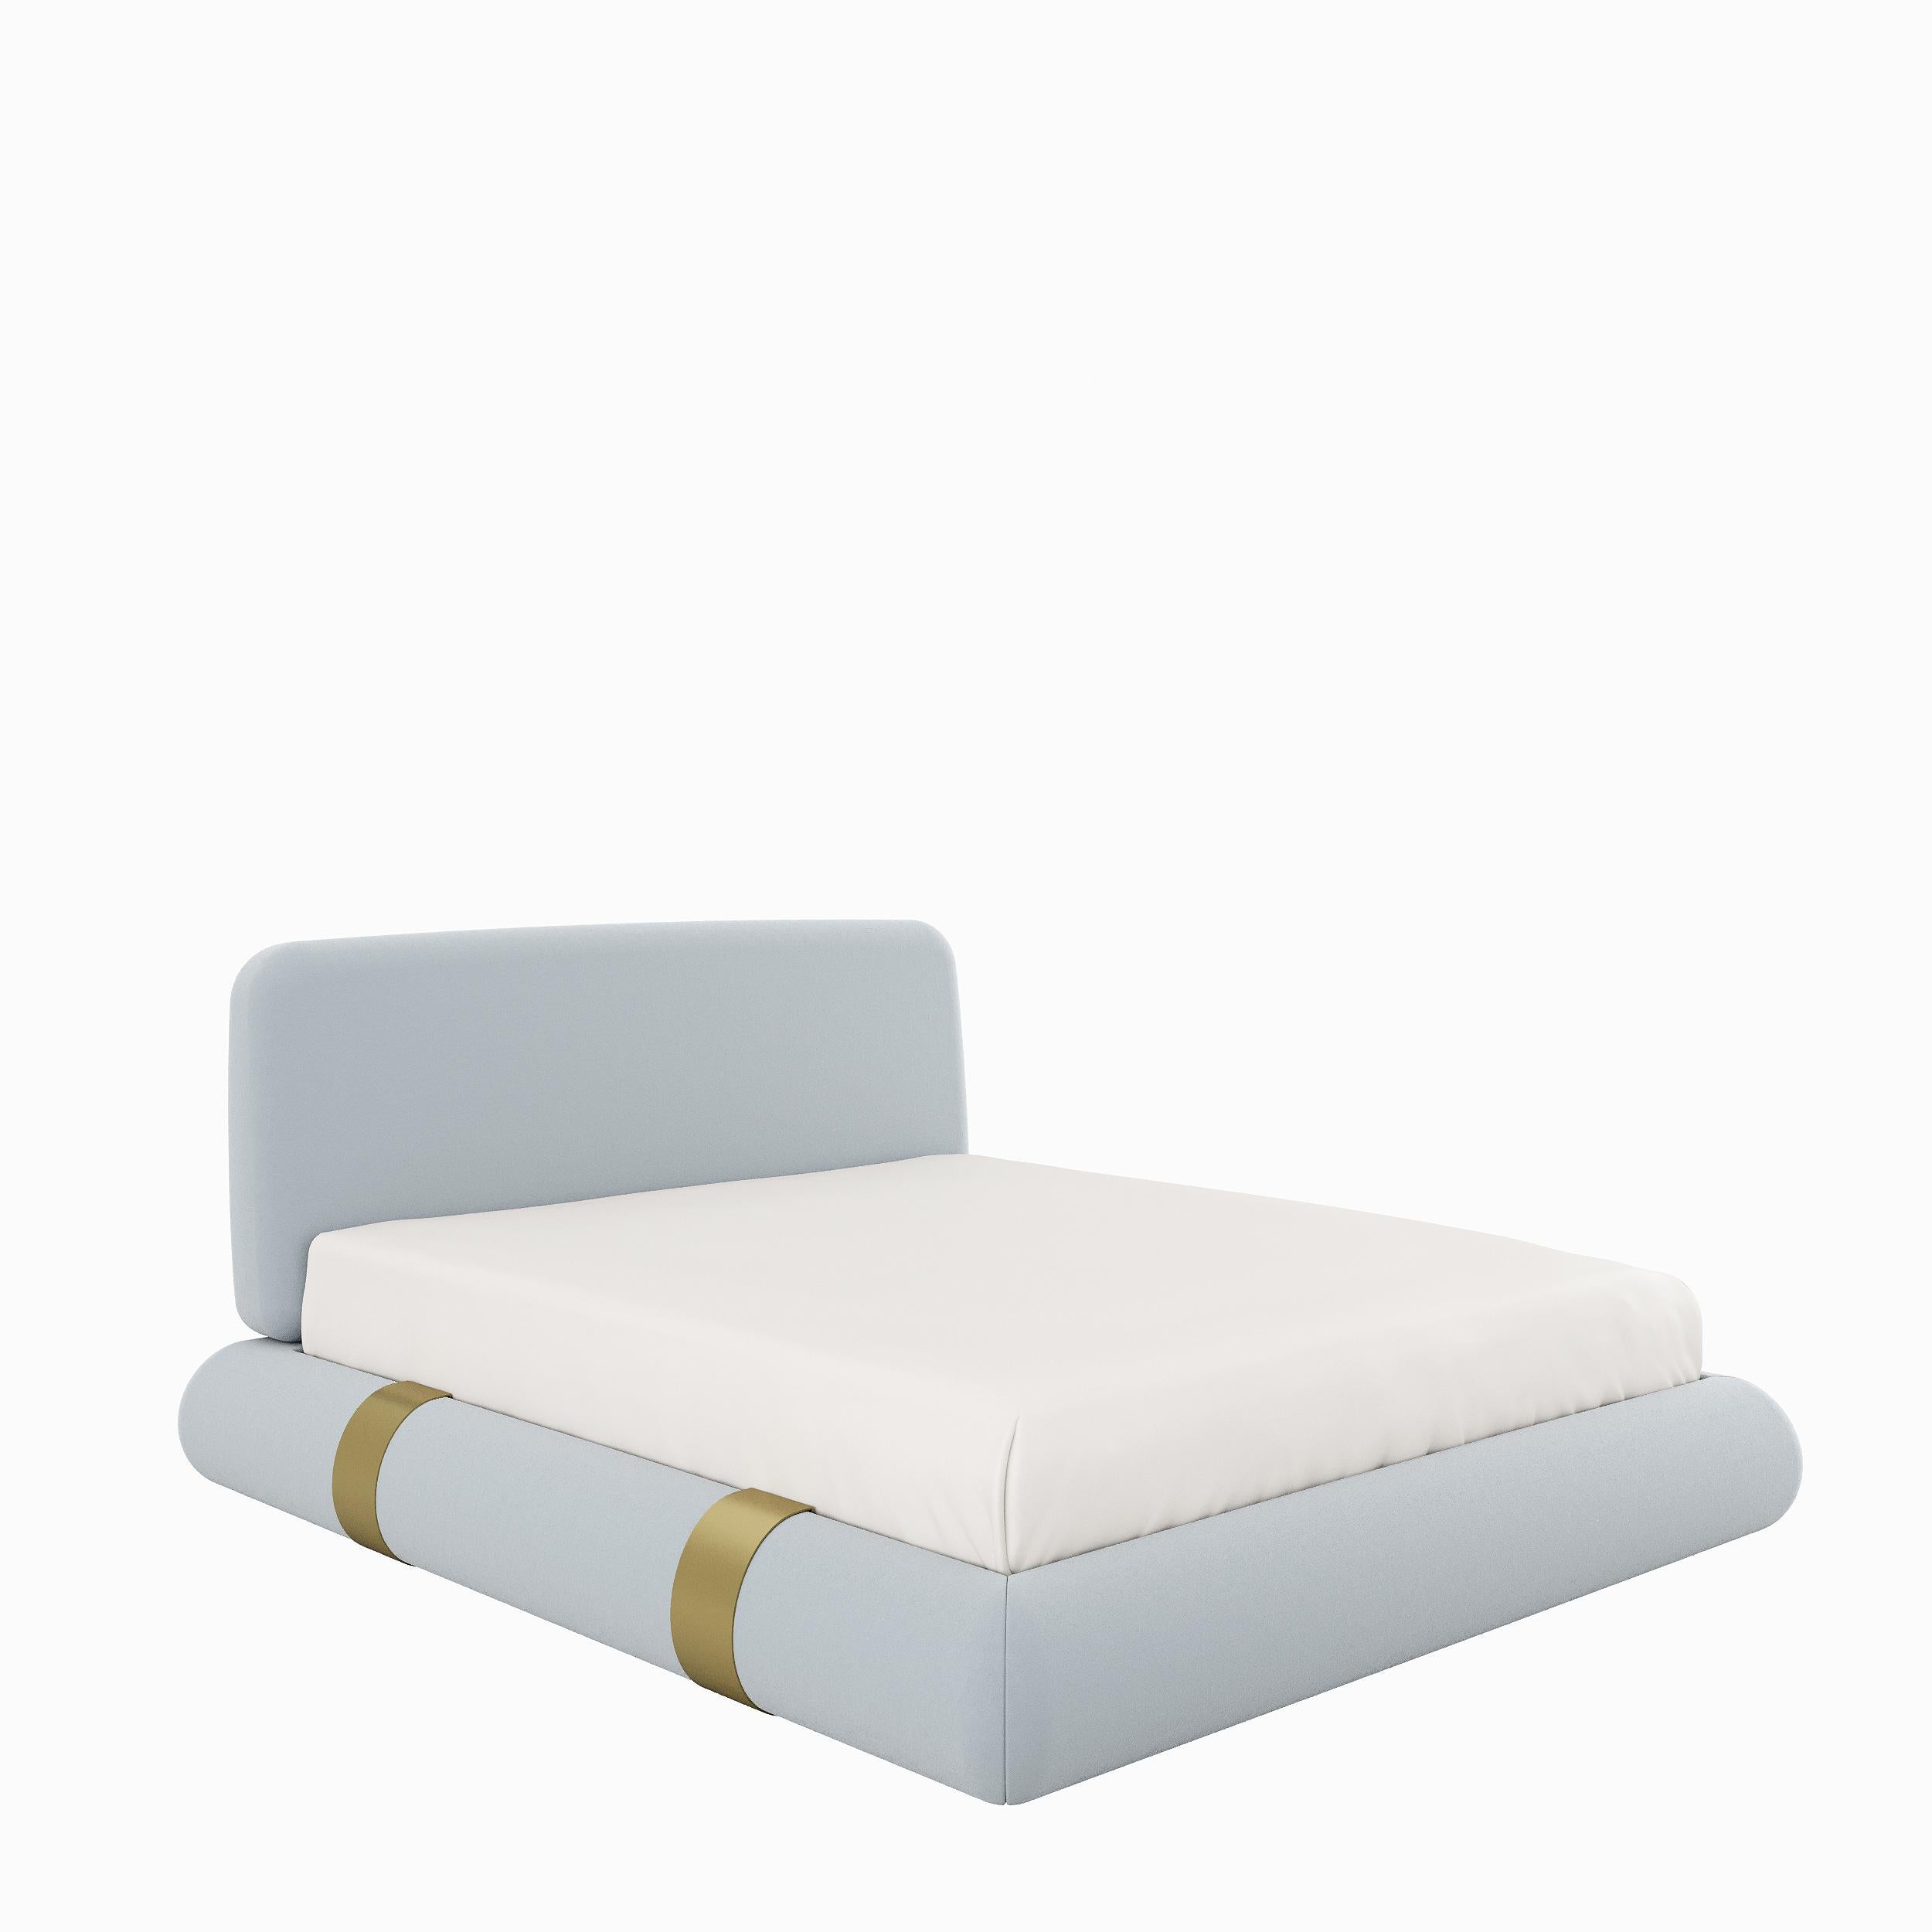 Moderne, épuré et minimaliste.
Le lit BRISTOL se caractérise par des lignes droites, une silhouette parfaitement équilibrée et un confort surprenant.
Bristol invite l'utilisateur à se sentir chez lui.
Les détails en laiton antique du lit moderne